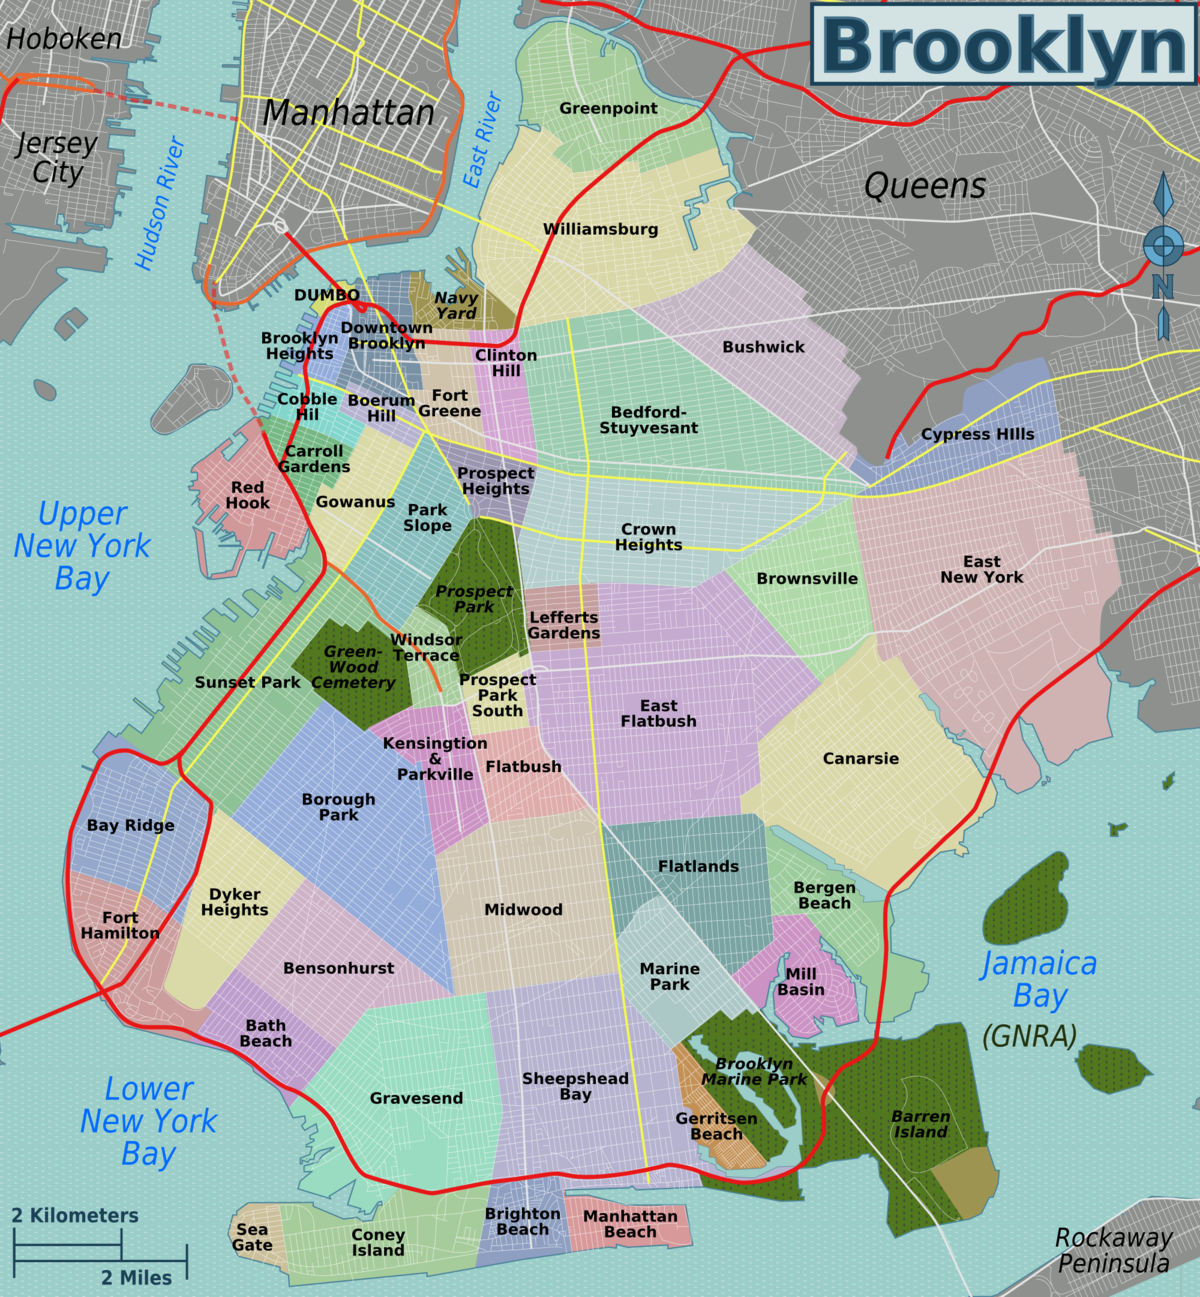 manhattan and brooklyn map List Of Brooklyn Neighborhoods Wikipedia manhattan and brooklyn map